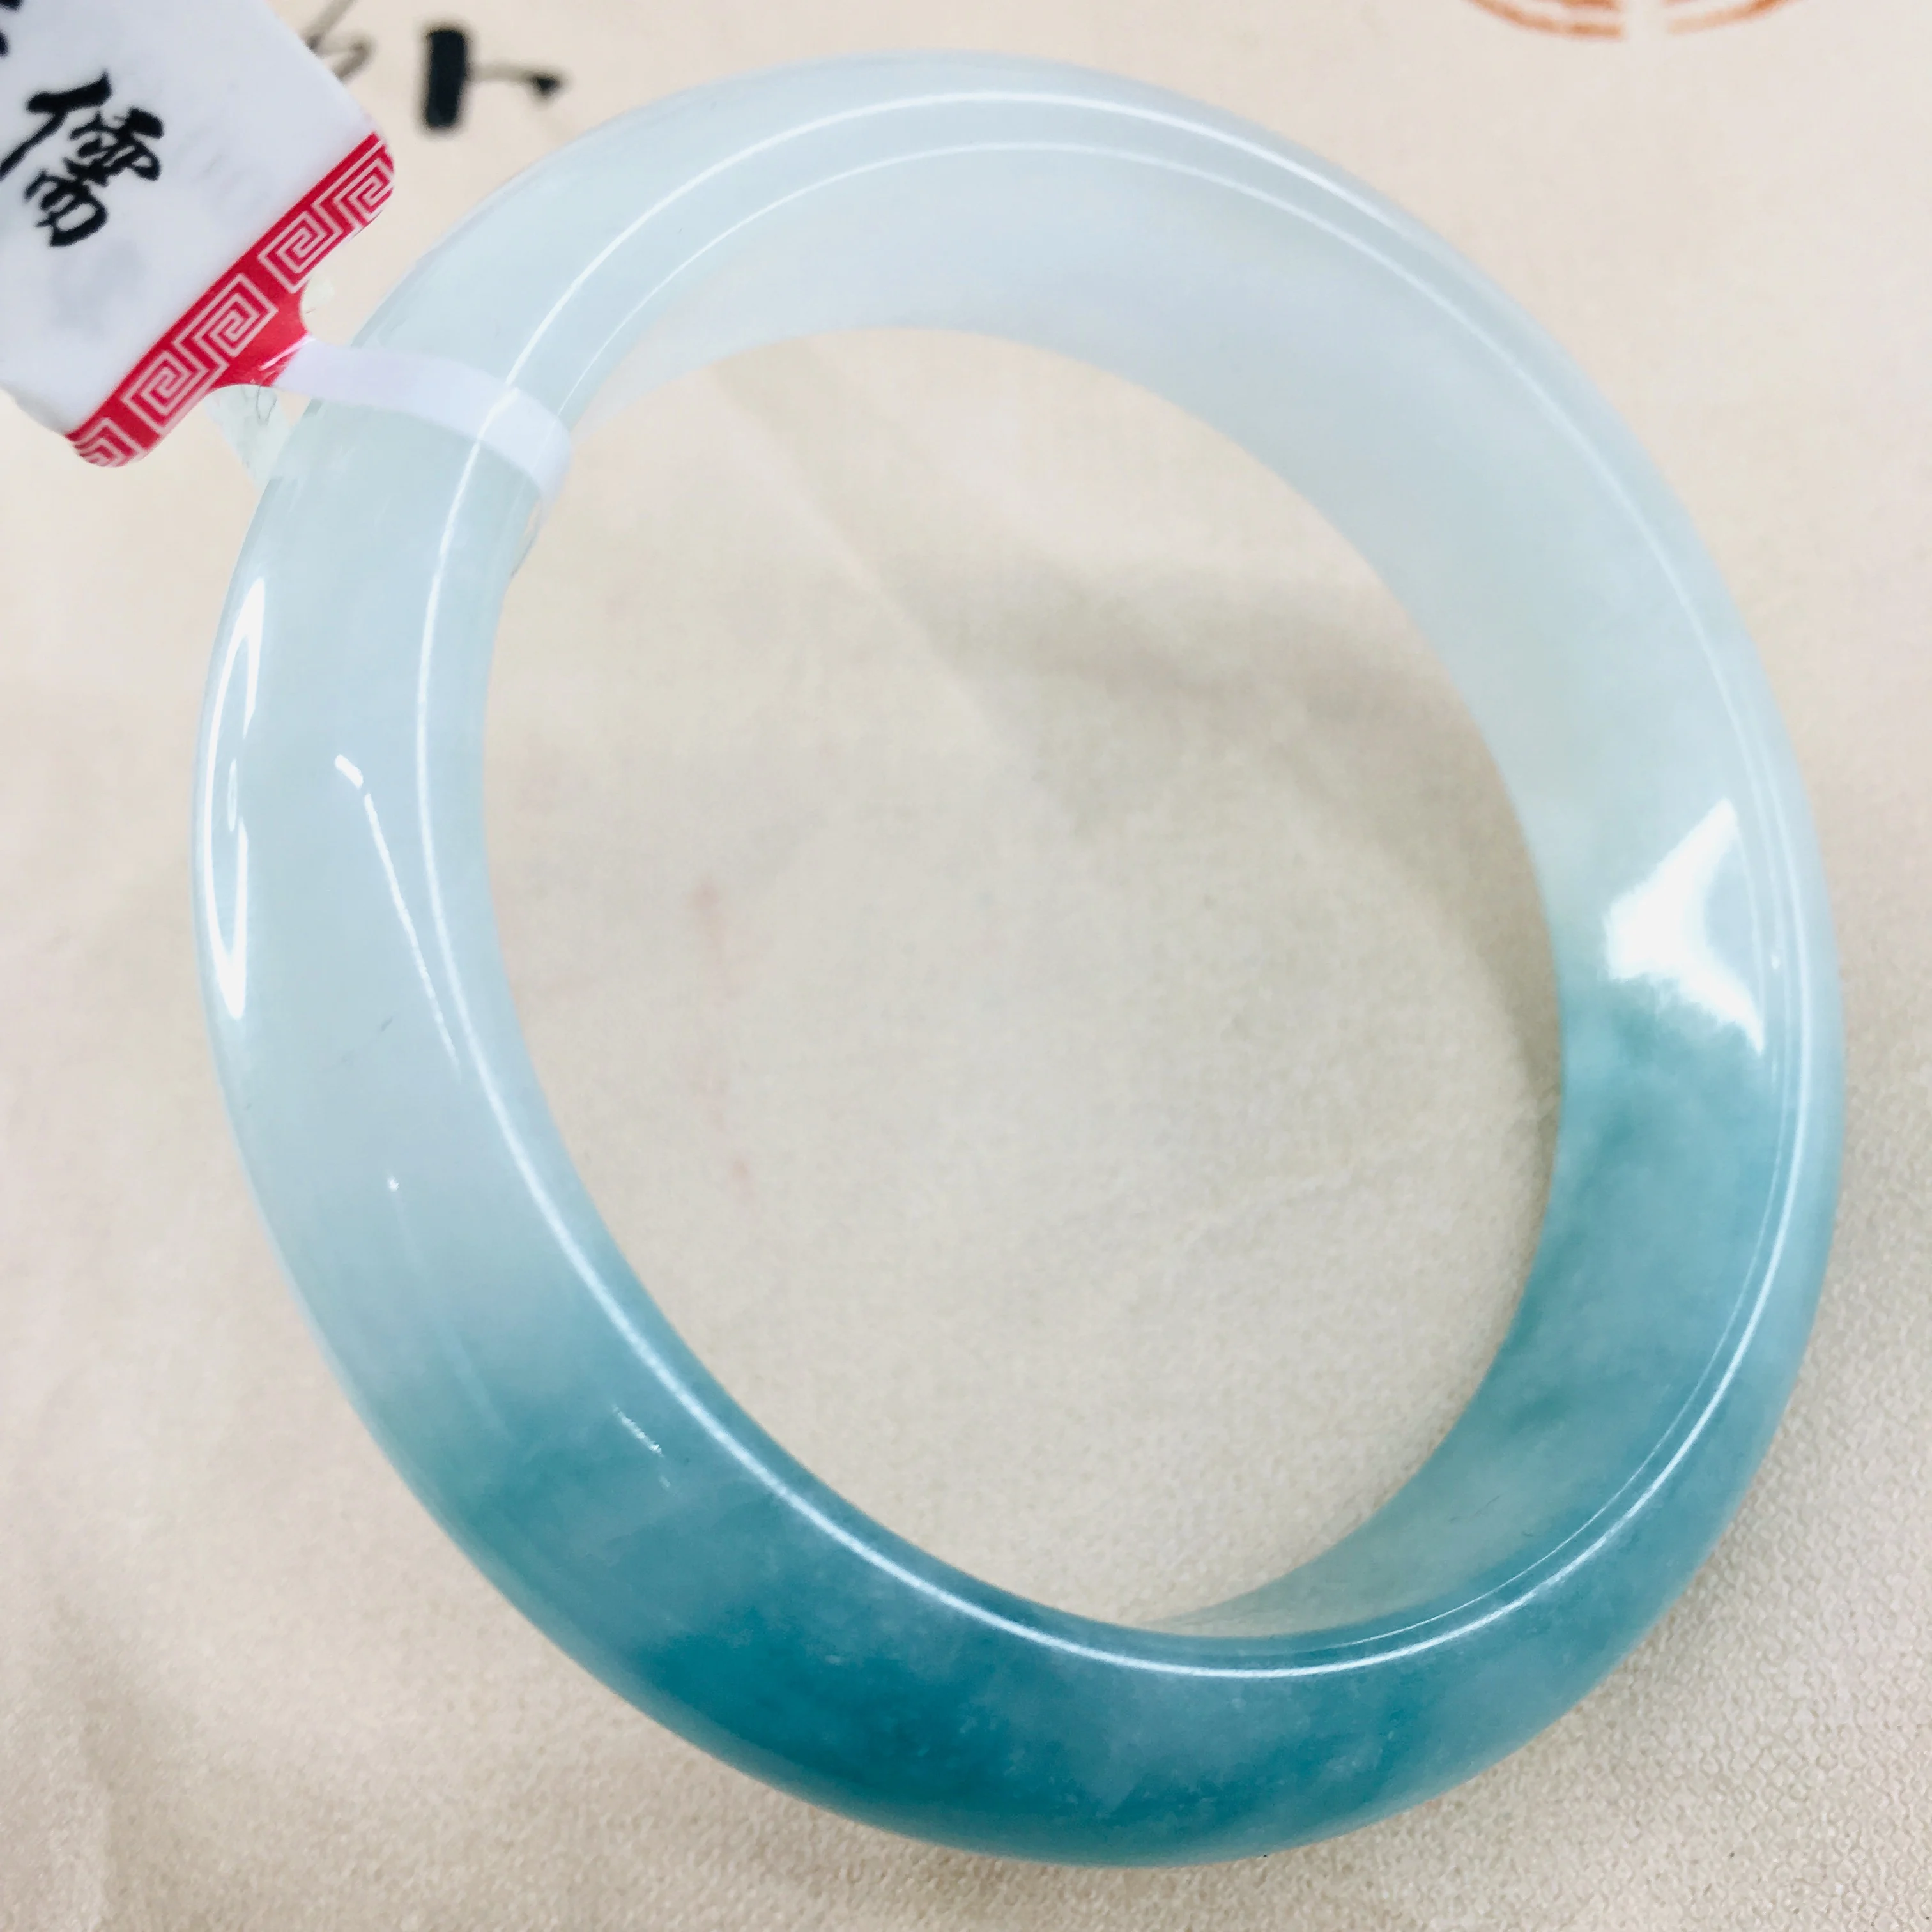 Zheru ювелирные изделия чистый натуральный жадеитовый браслет из натурального прозрачного камня нижней голубой воды 54-62 мм двойной цвет женский нефритовый браслет отправить Certifi